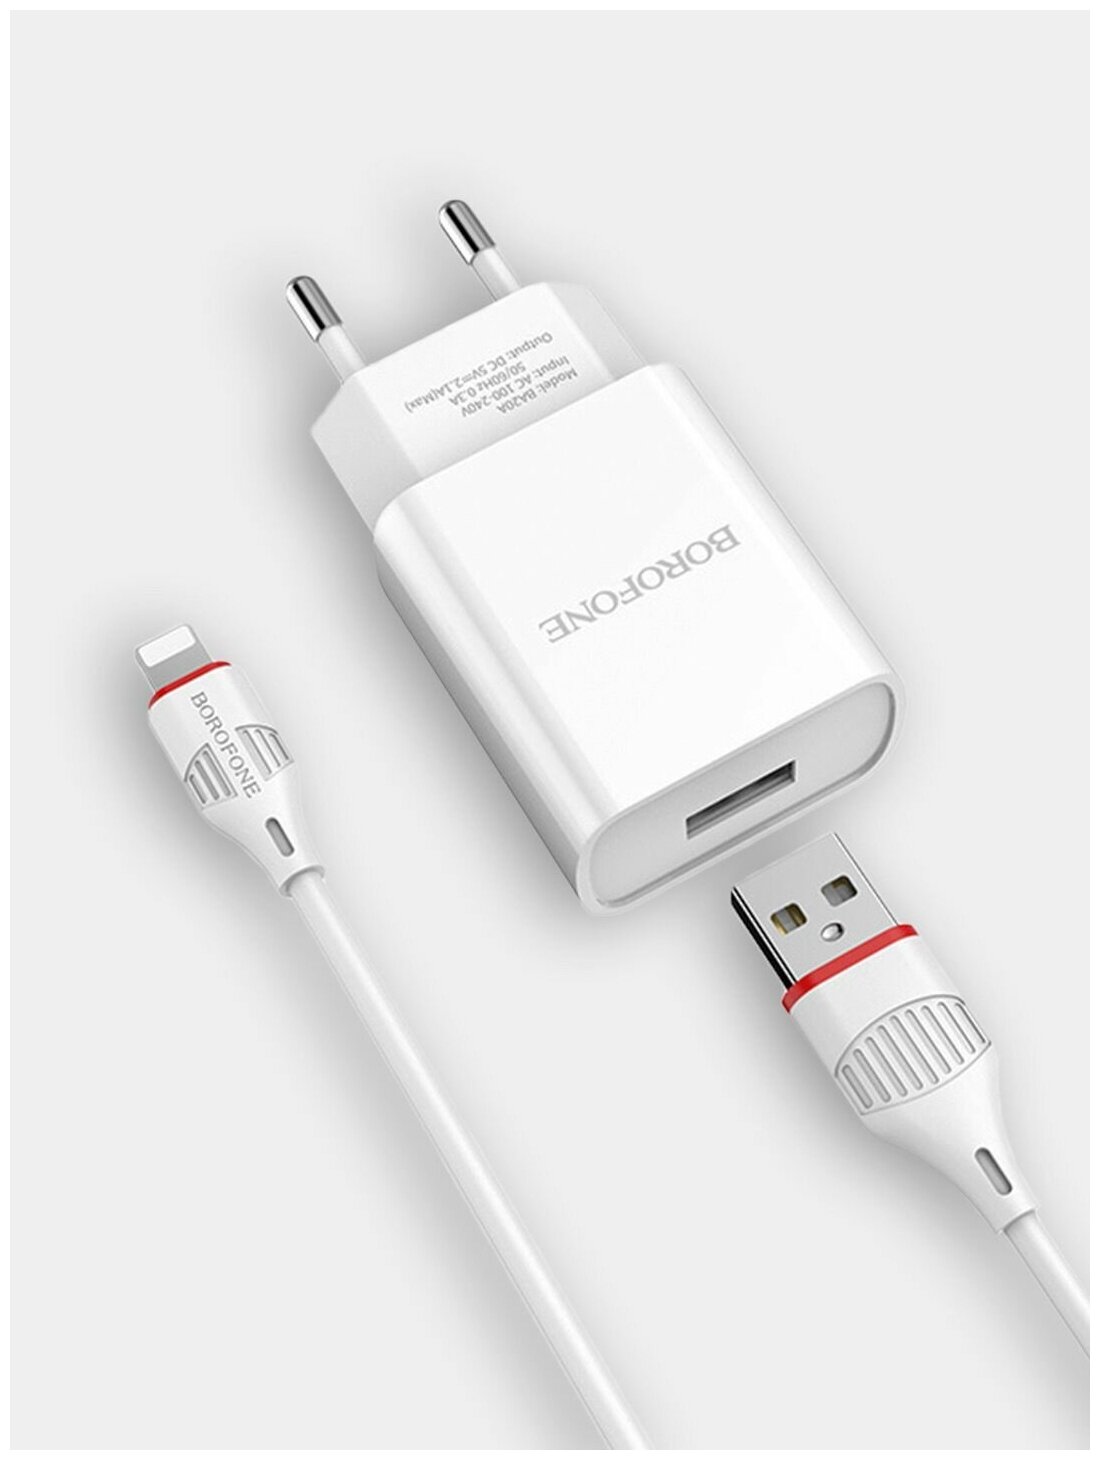 Зарядное устройство для iPhonе: блок питания с кабелем Lightning, 1 м, мощность 2.1А